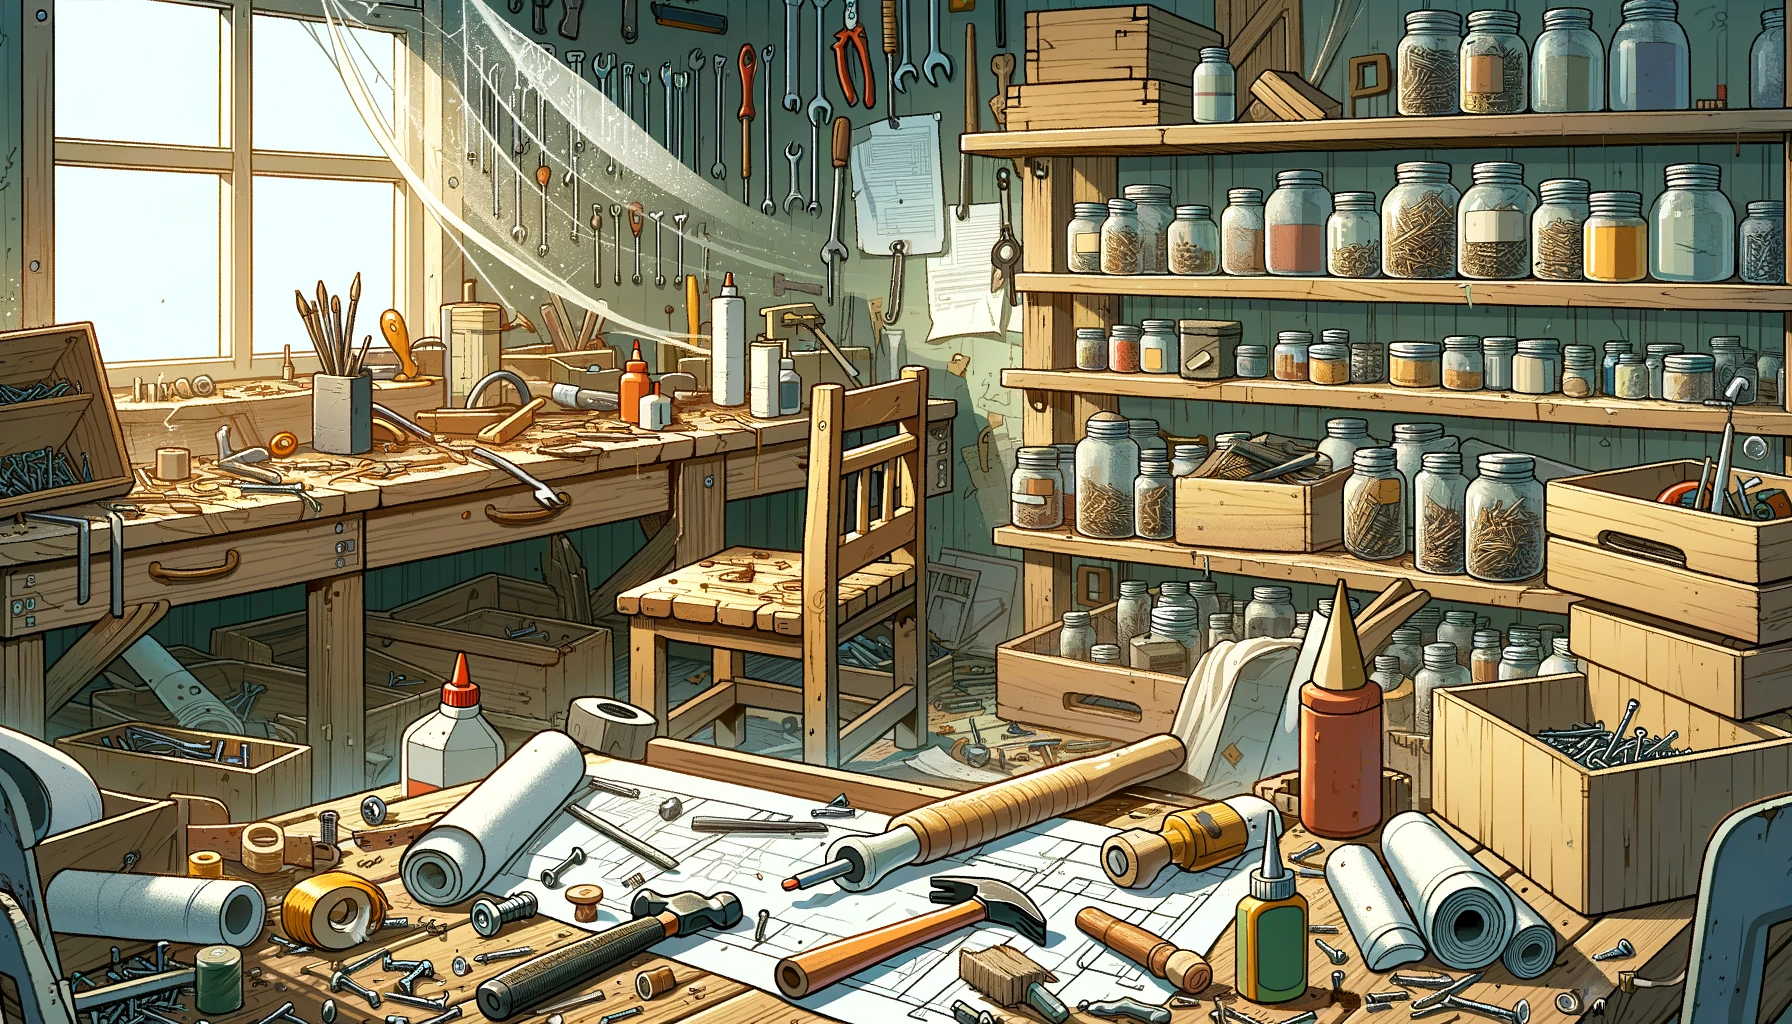 Illustration of a messy workshop